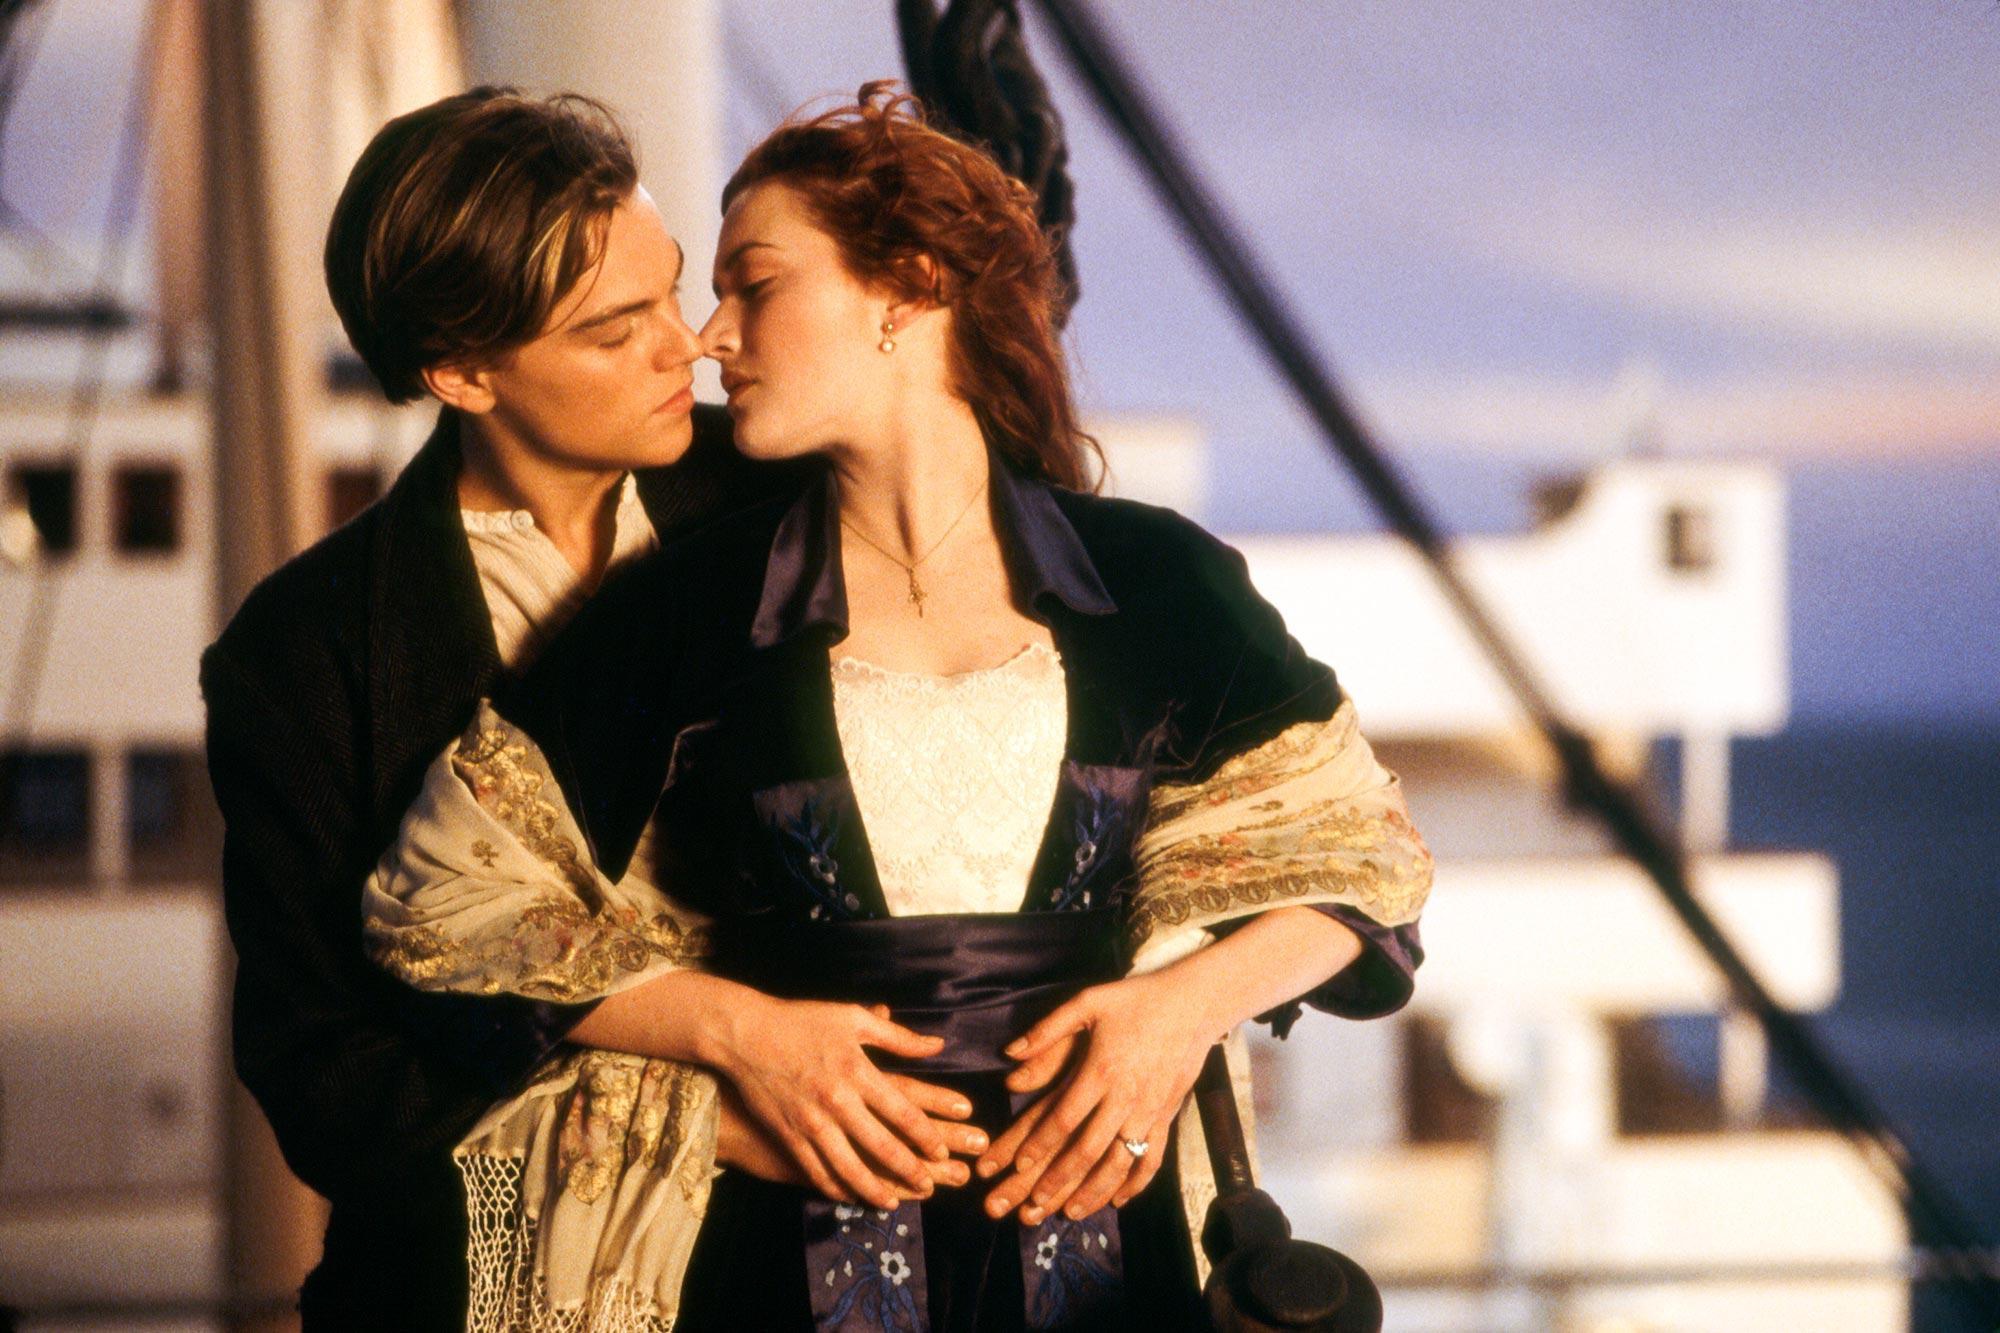 Tài tử Leonardo DiCaprio ở tuổi U50: “Chú ngựa hoang” mãi chạy theo cuộc tình bên các chân dài, mối quan hệ đặc biệt với nàng Rose “Titanic” - Ảnh 14.